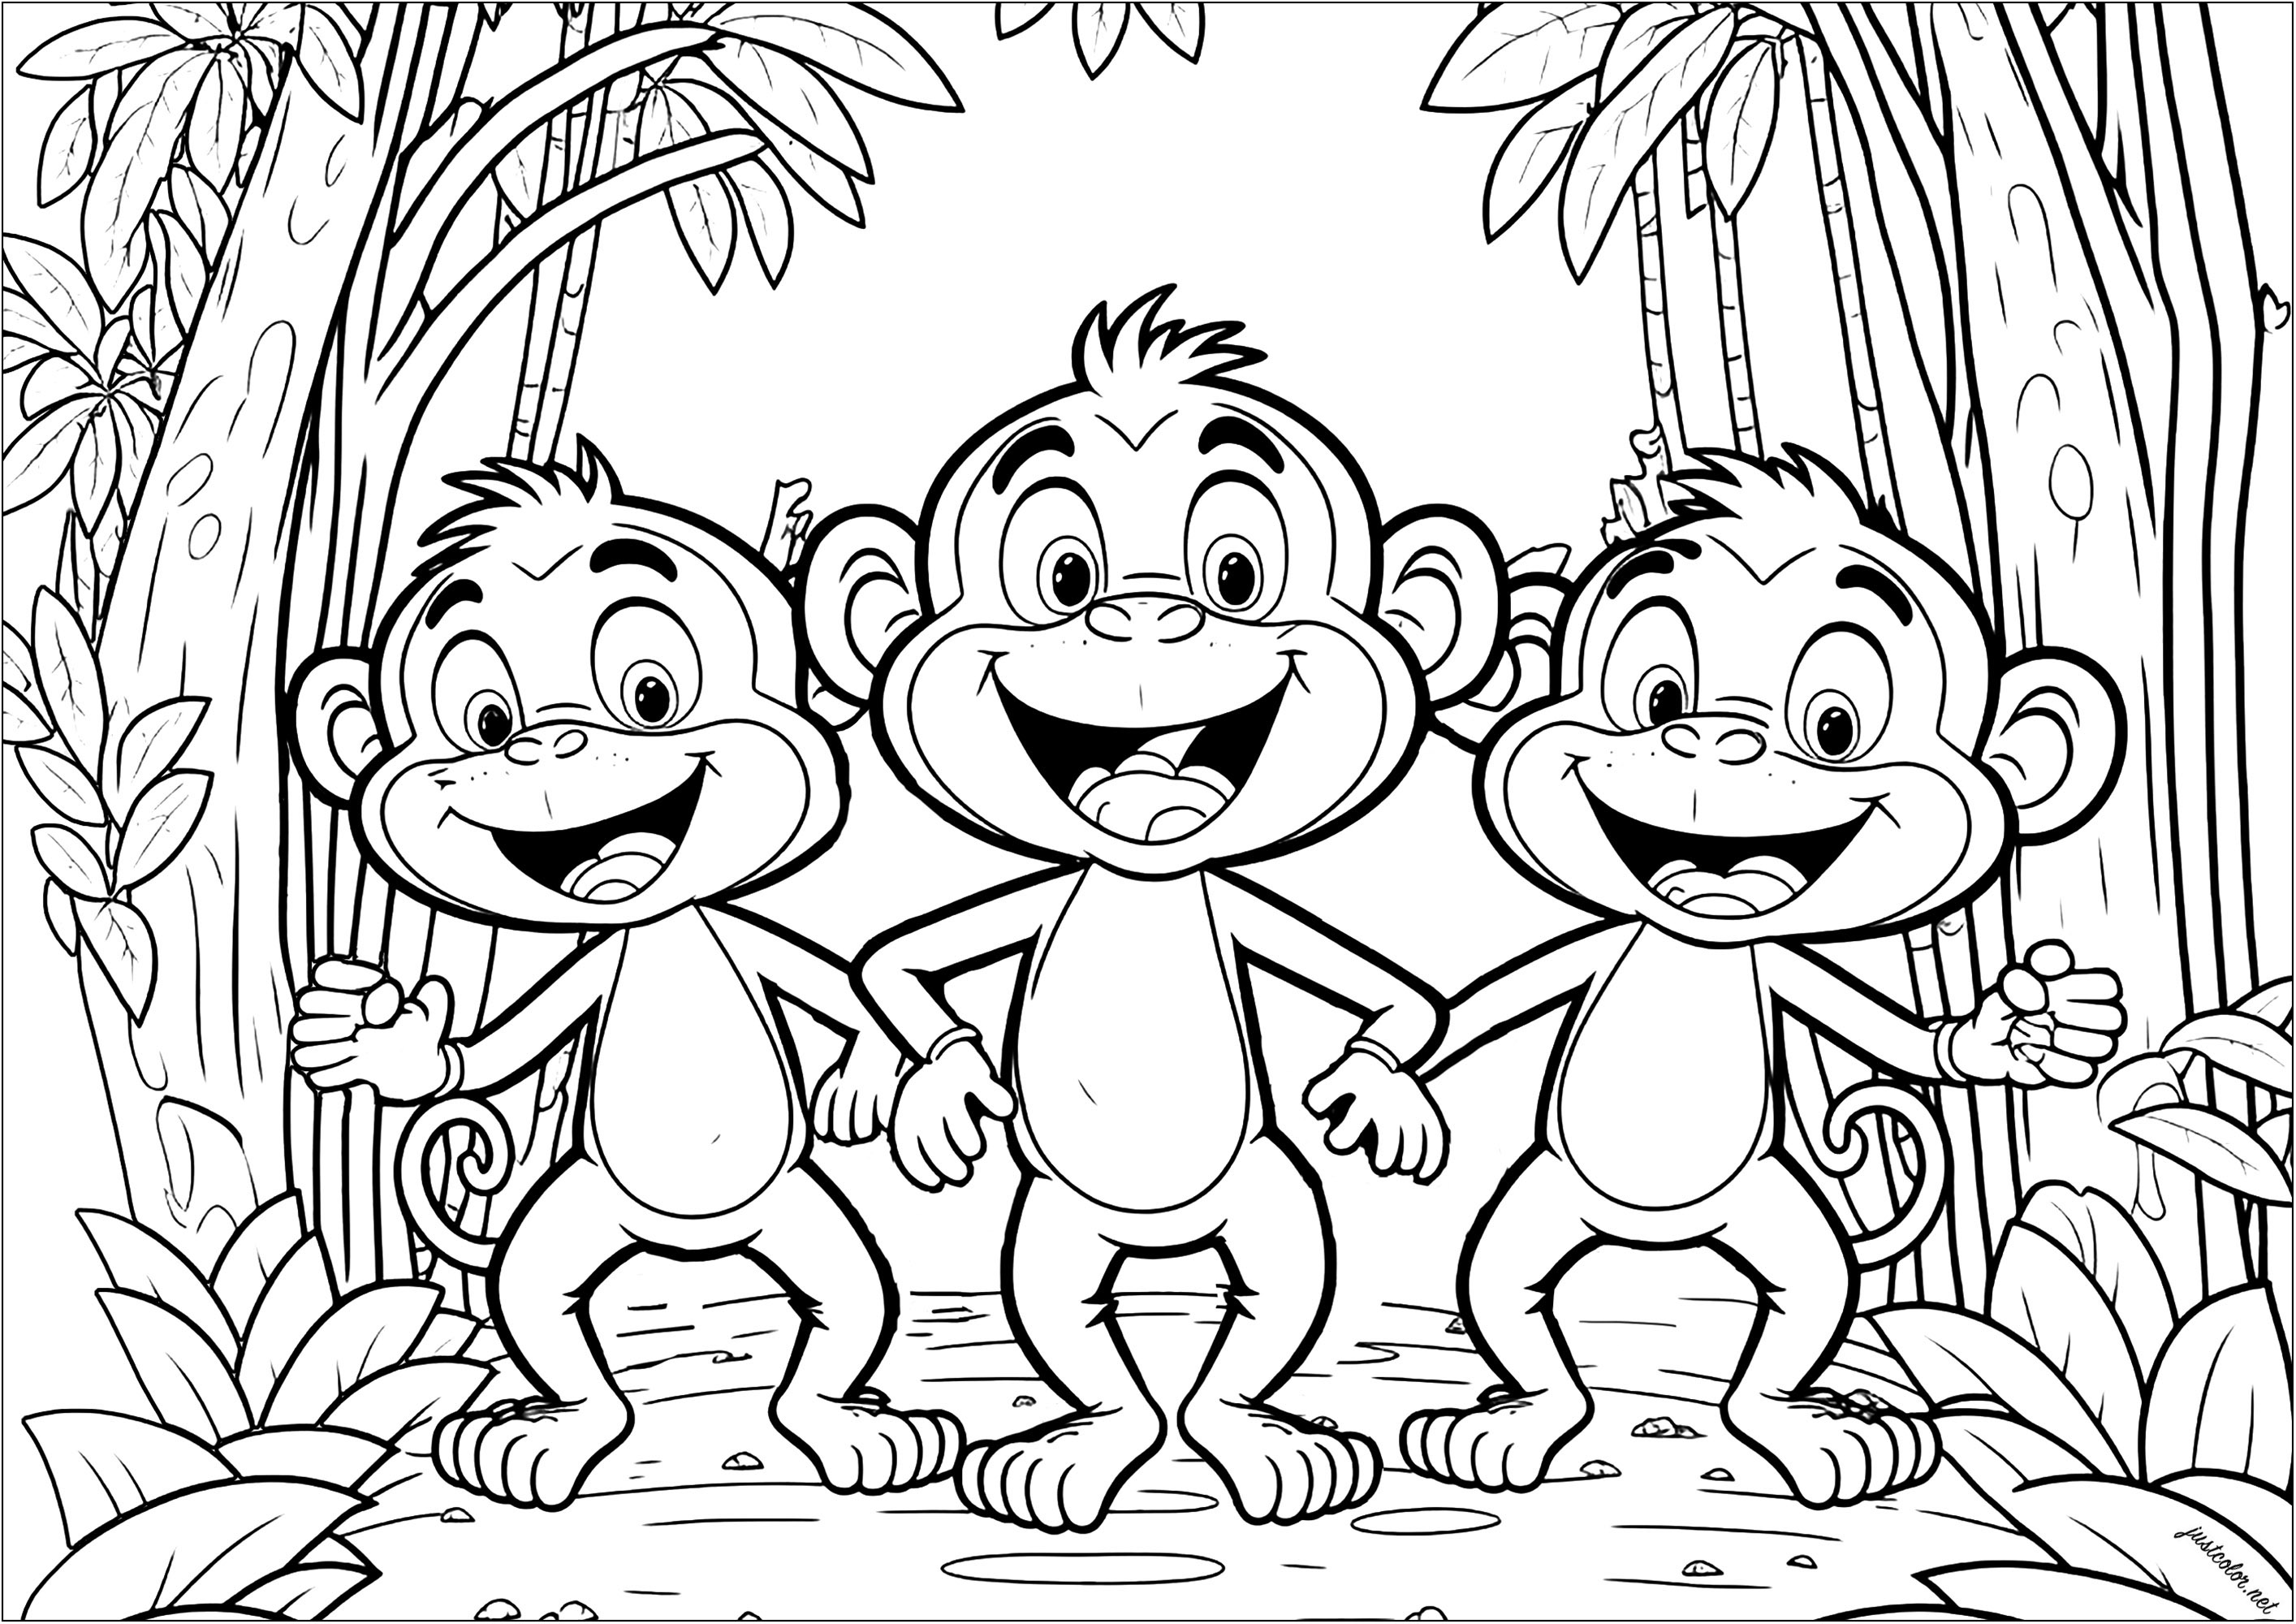 Tres divertidos monos para colorear. Estos primates parecen muy infantiles, pero el colorido se hace bastante complejo gracias a la vegetación del fondo